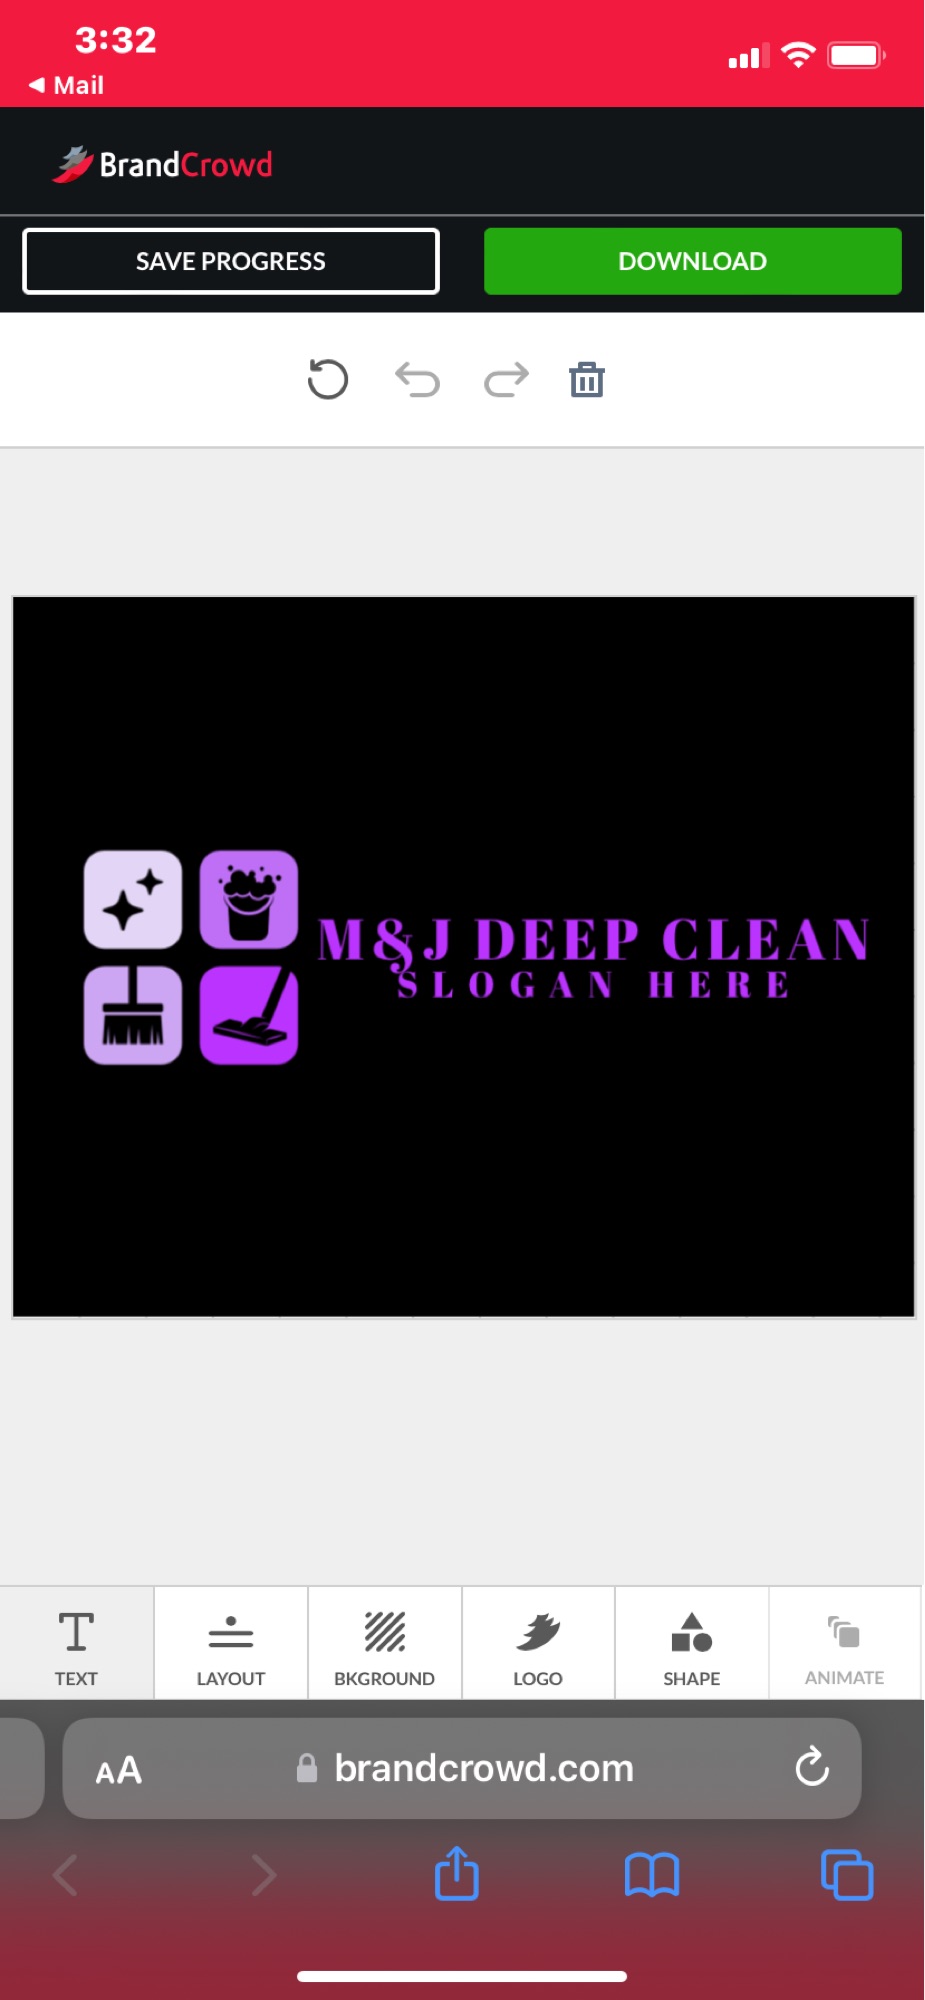 M&J Deep Clean Logo